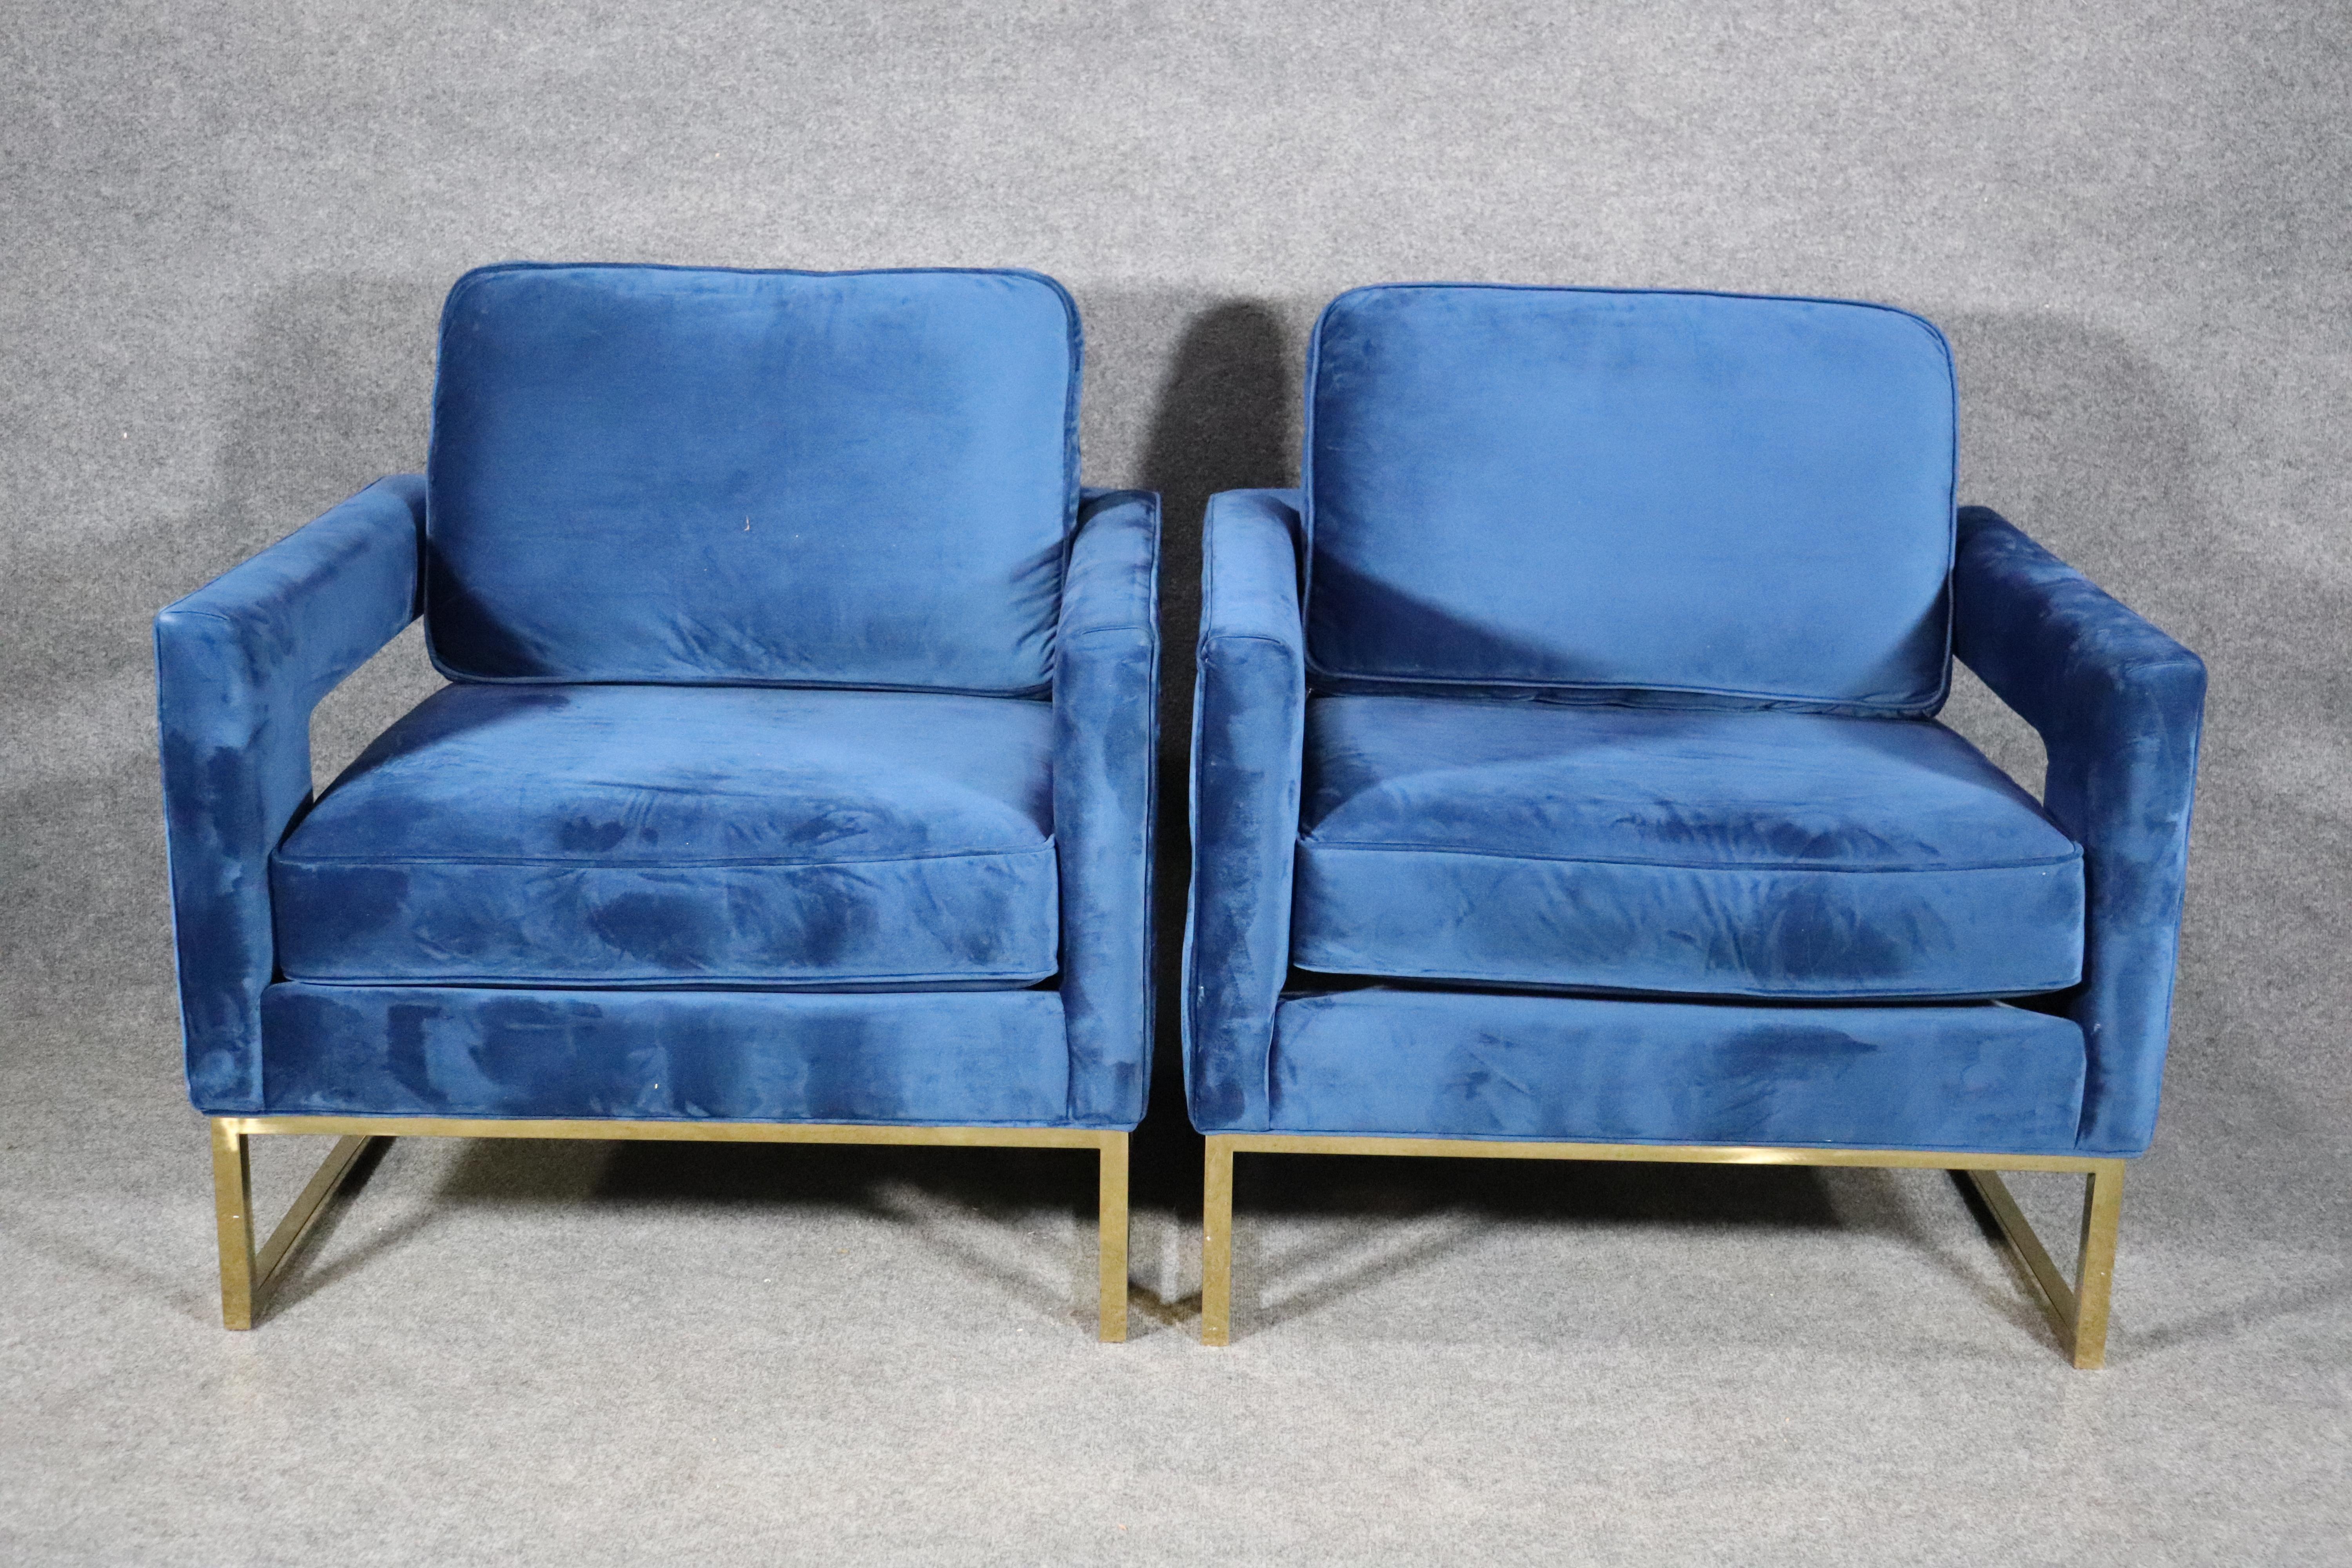 Clubsessel im modernen Stil der Jahrhundertmitte mit poliertem Bassfuß. Mit weichem blauem Samt umhüllte Stühle mit ausgeschnittenen Armlehnen.
Bitte bestätigen Sie den Standort NY oder NJ